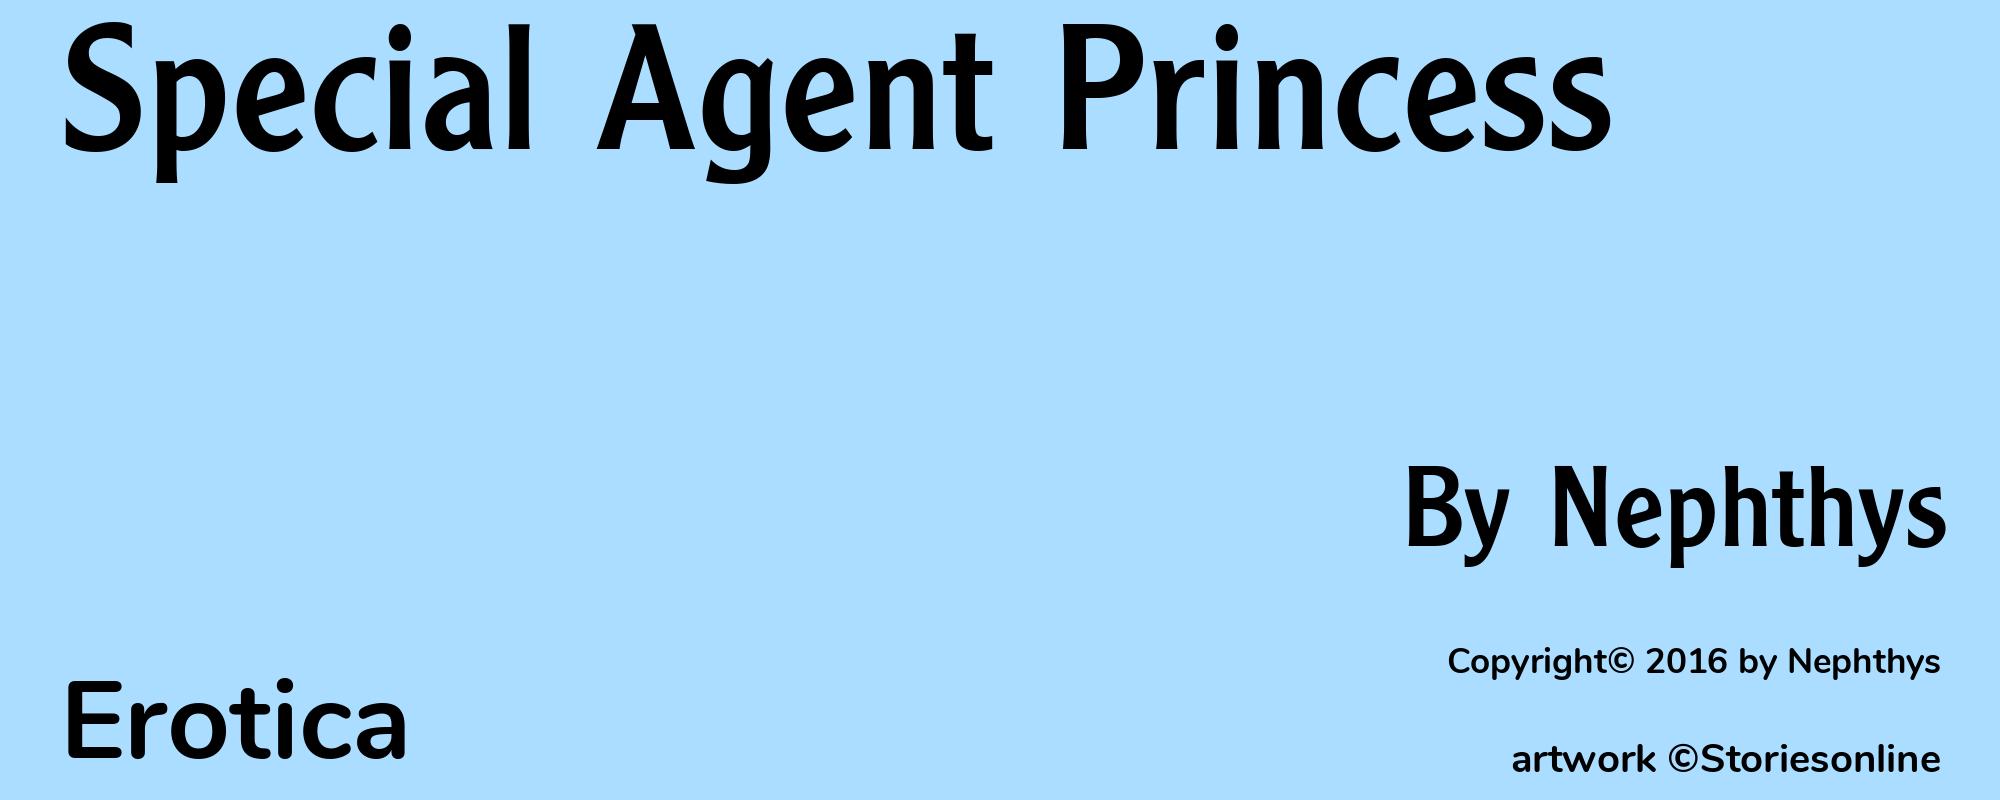 Special Agent Princess - Cover